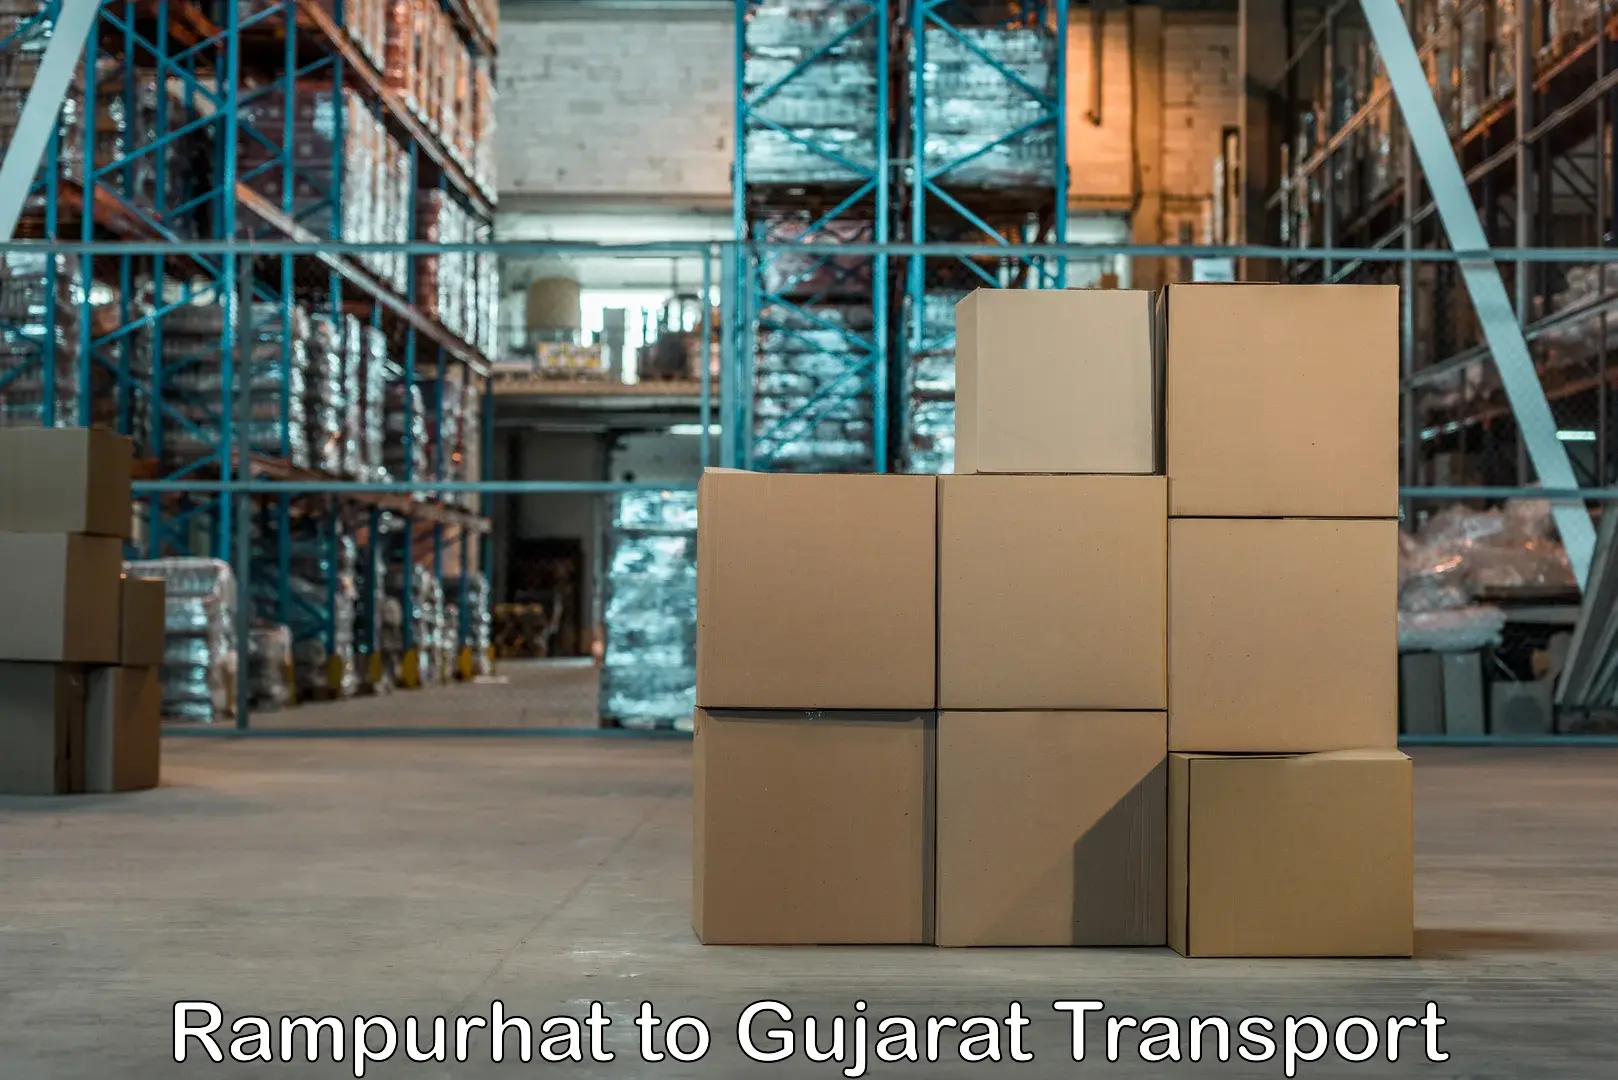 Furniture transport service Rampurhat to Gujarat